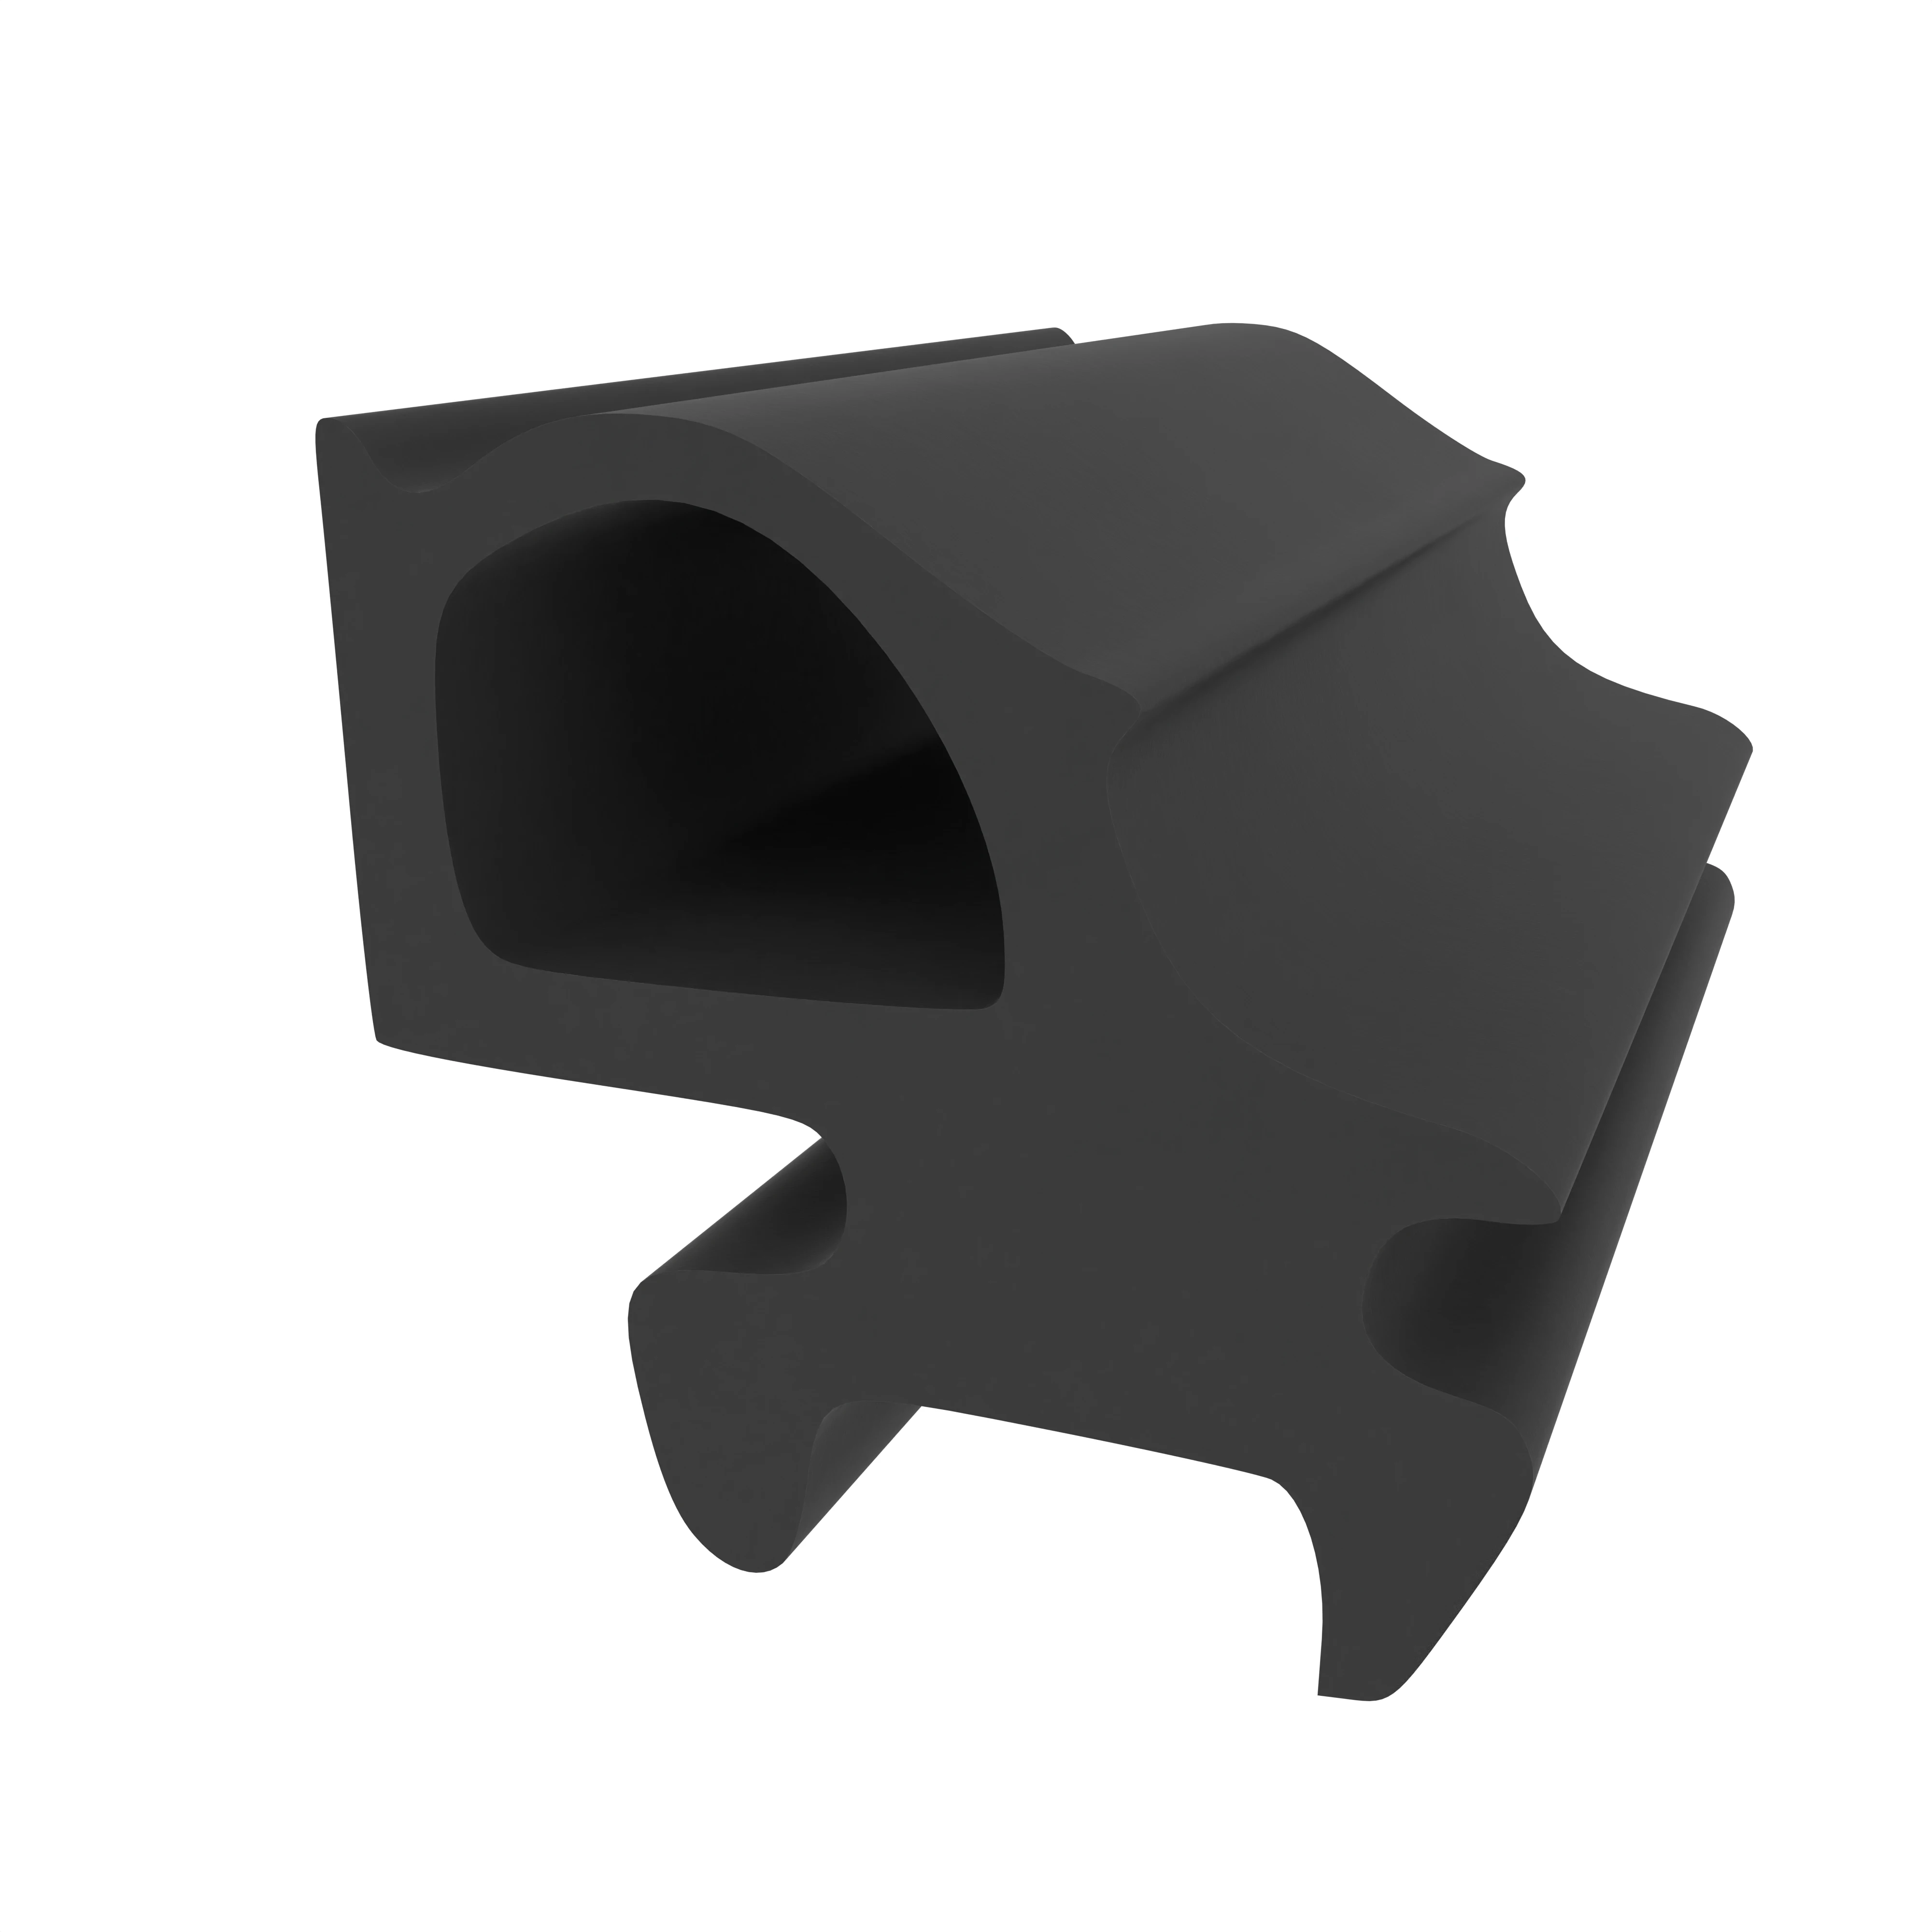 Anschlagdichtung für Aluplast WF 600 | 10 mm Breite | Farbe: schwarz